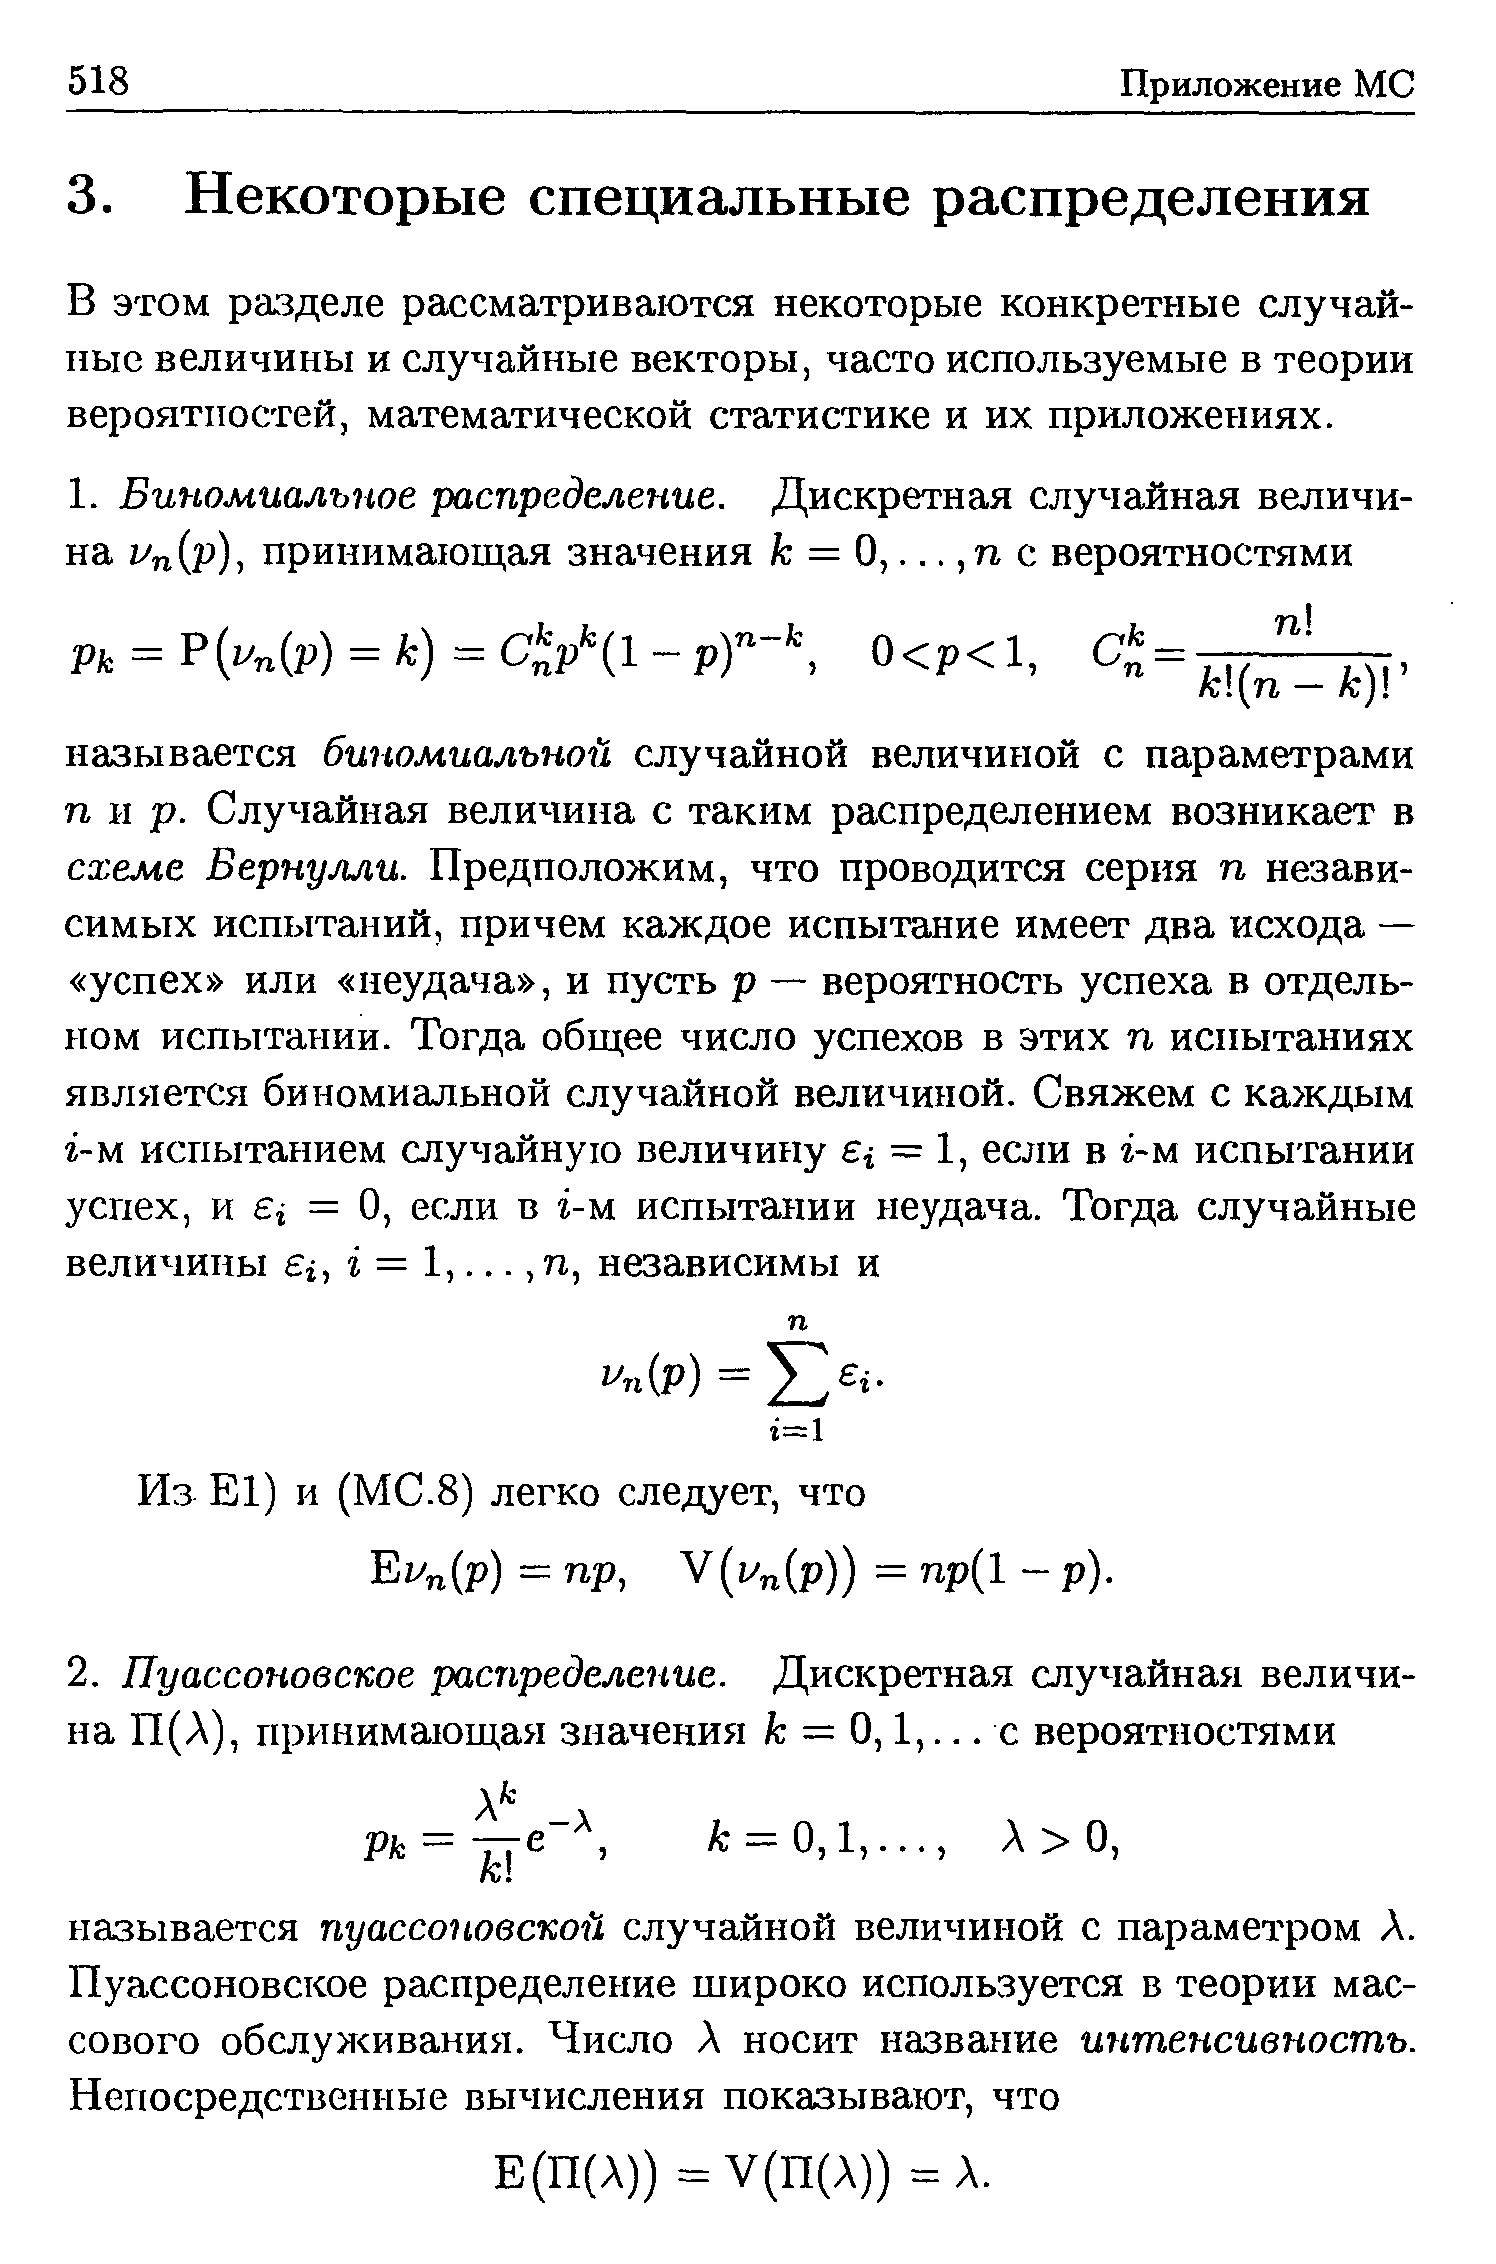 В этом разделе рассматриваются некоторые конкретные случайные величины и случайные векторы, часто используемые в теории вероятностей, математической статистике и их приложениях.
